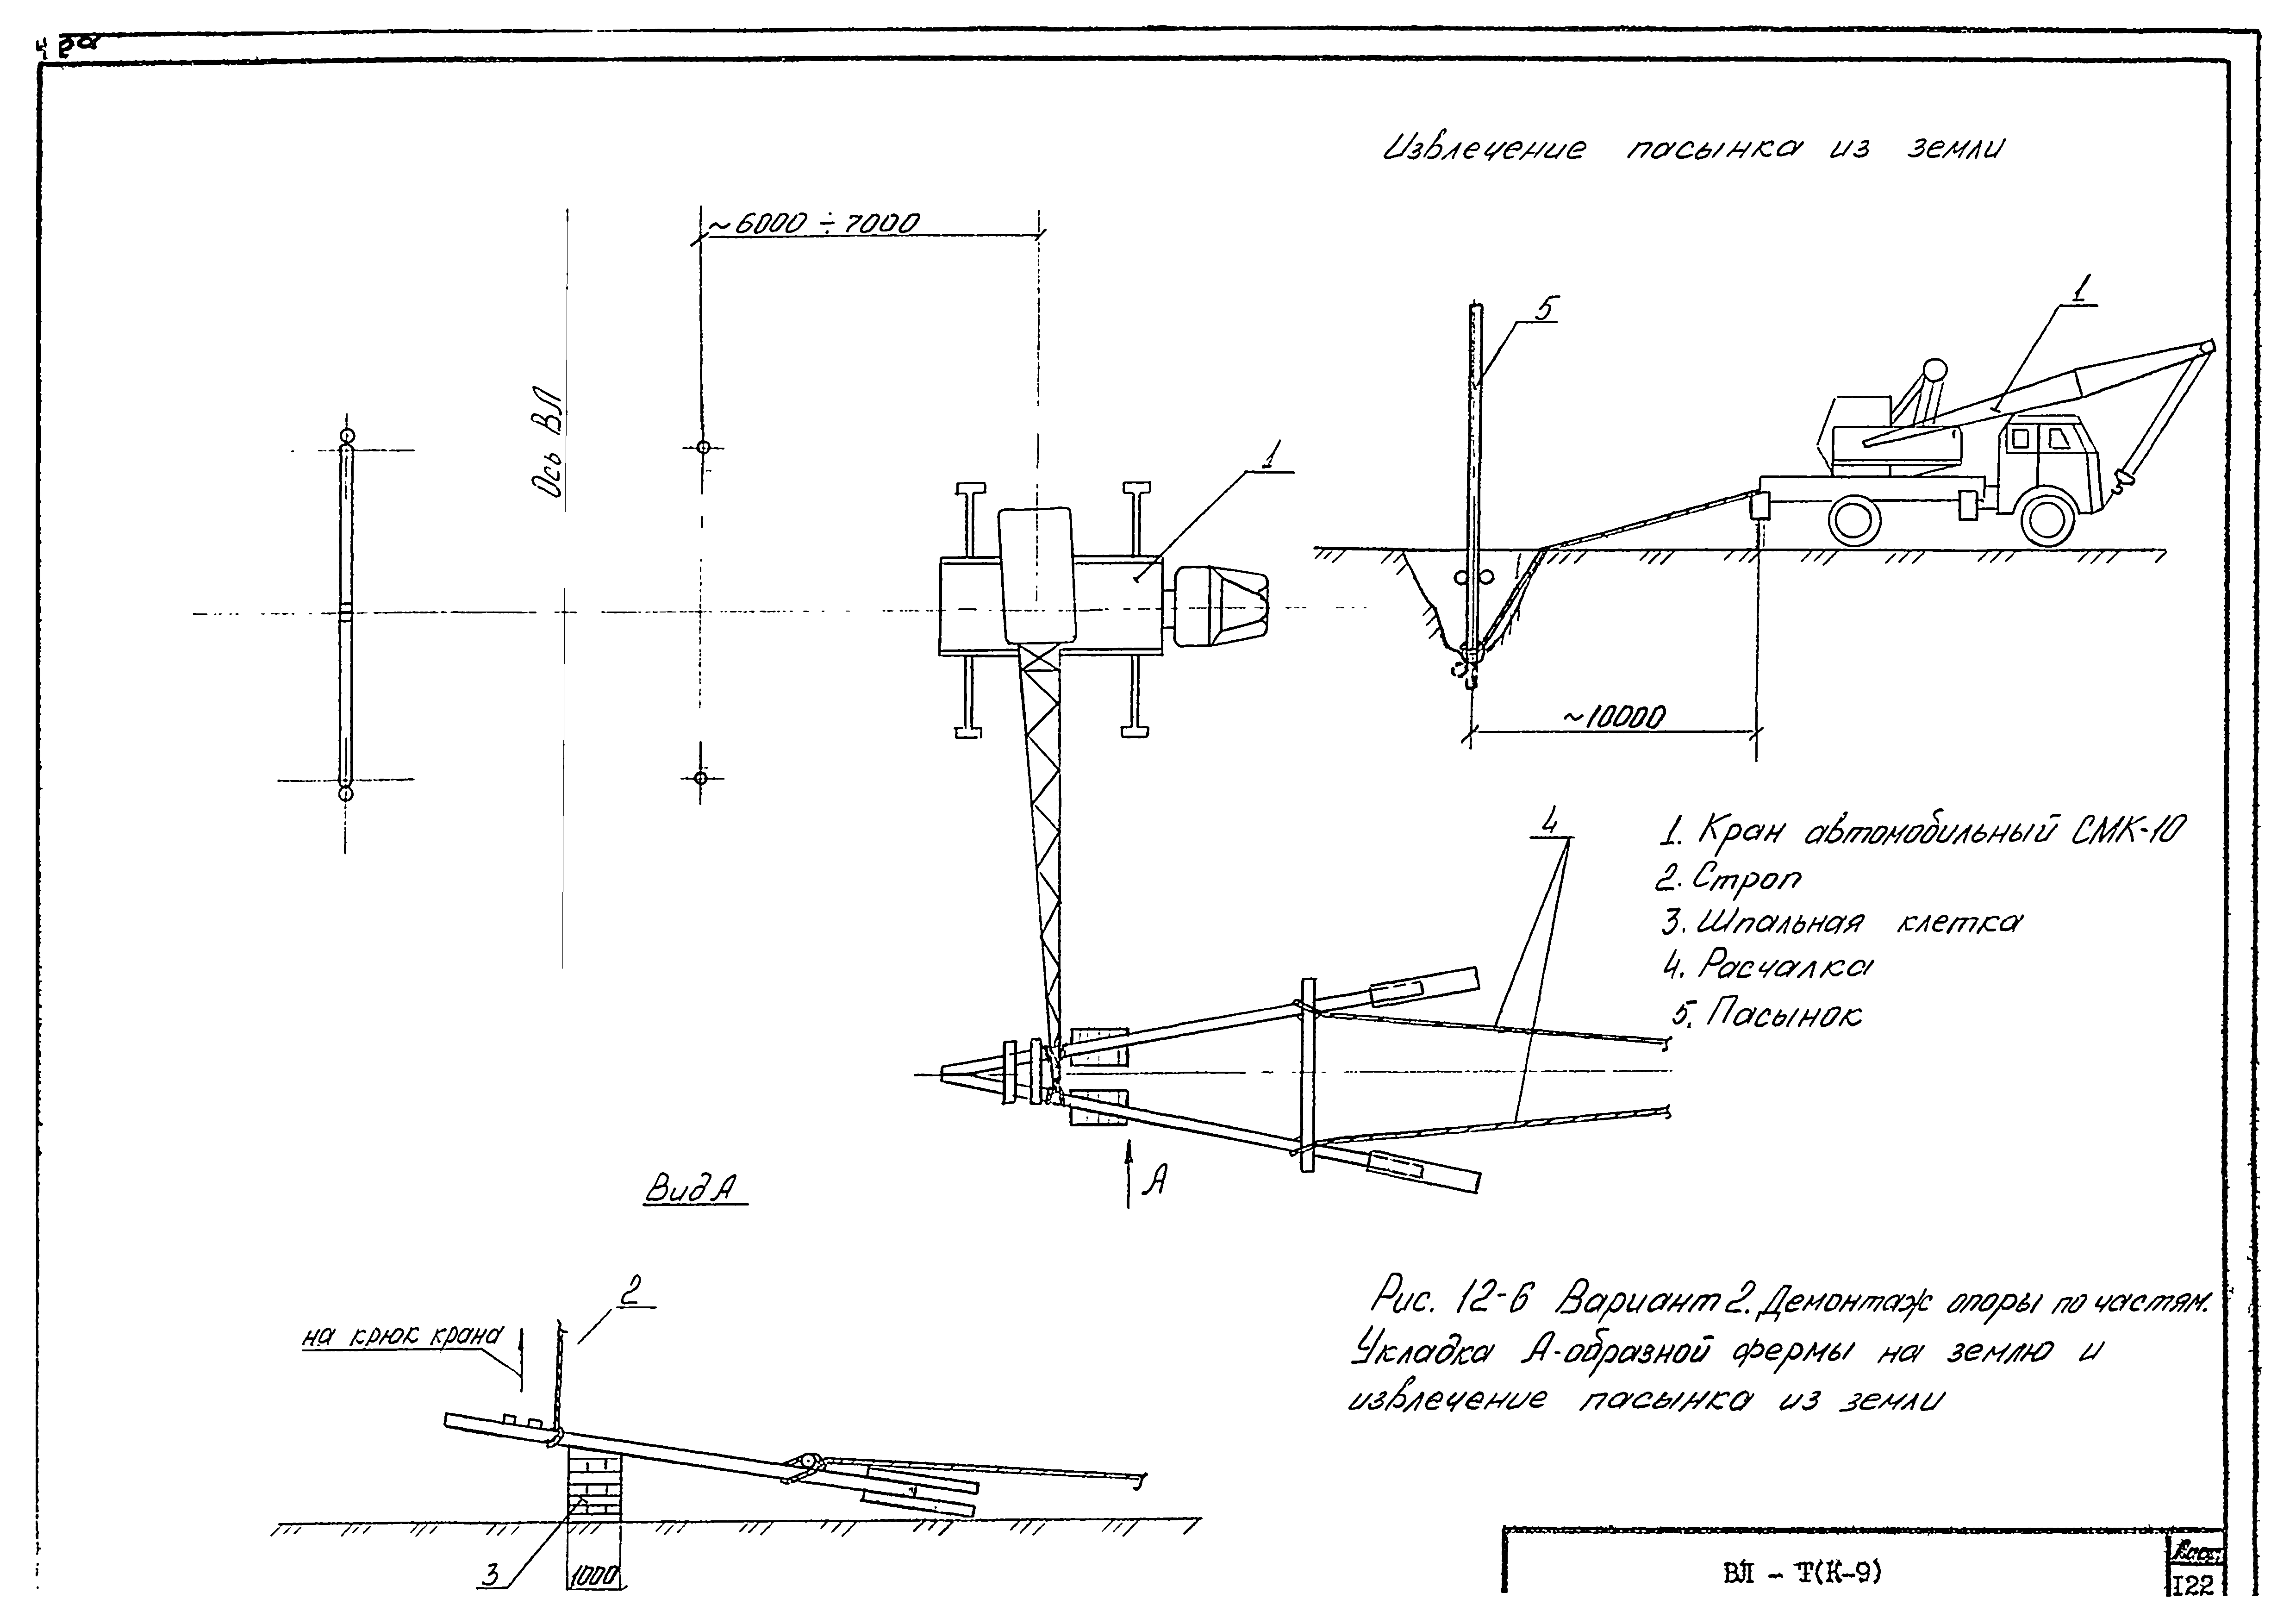 Технологическая карта К-9-12